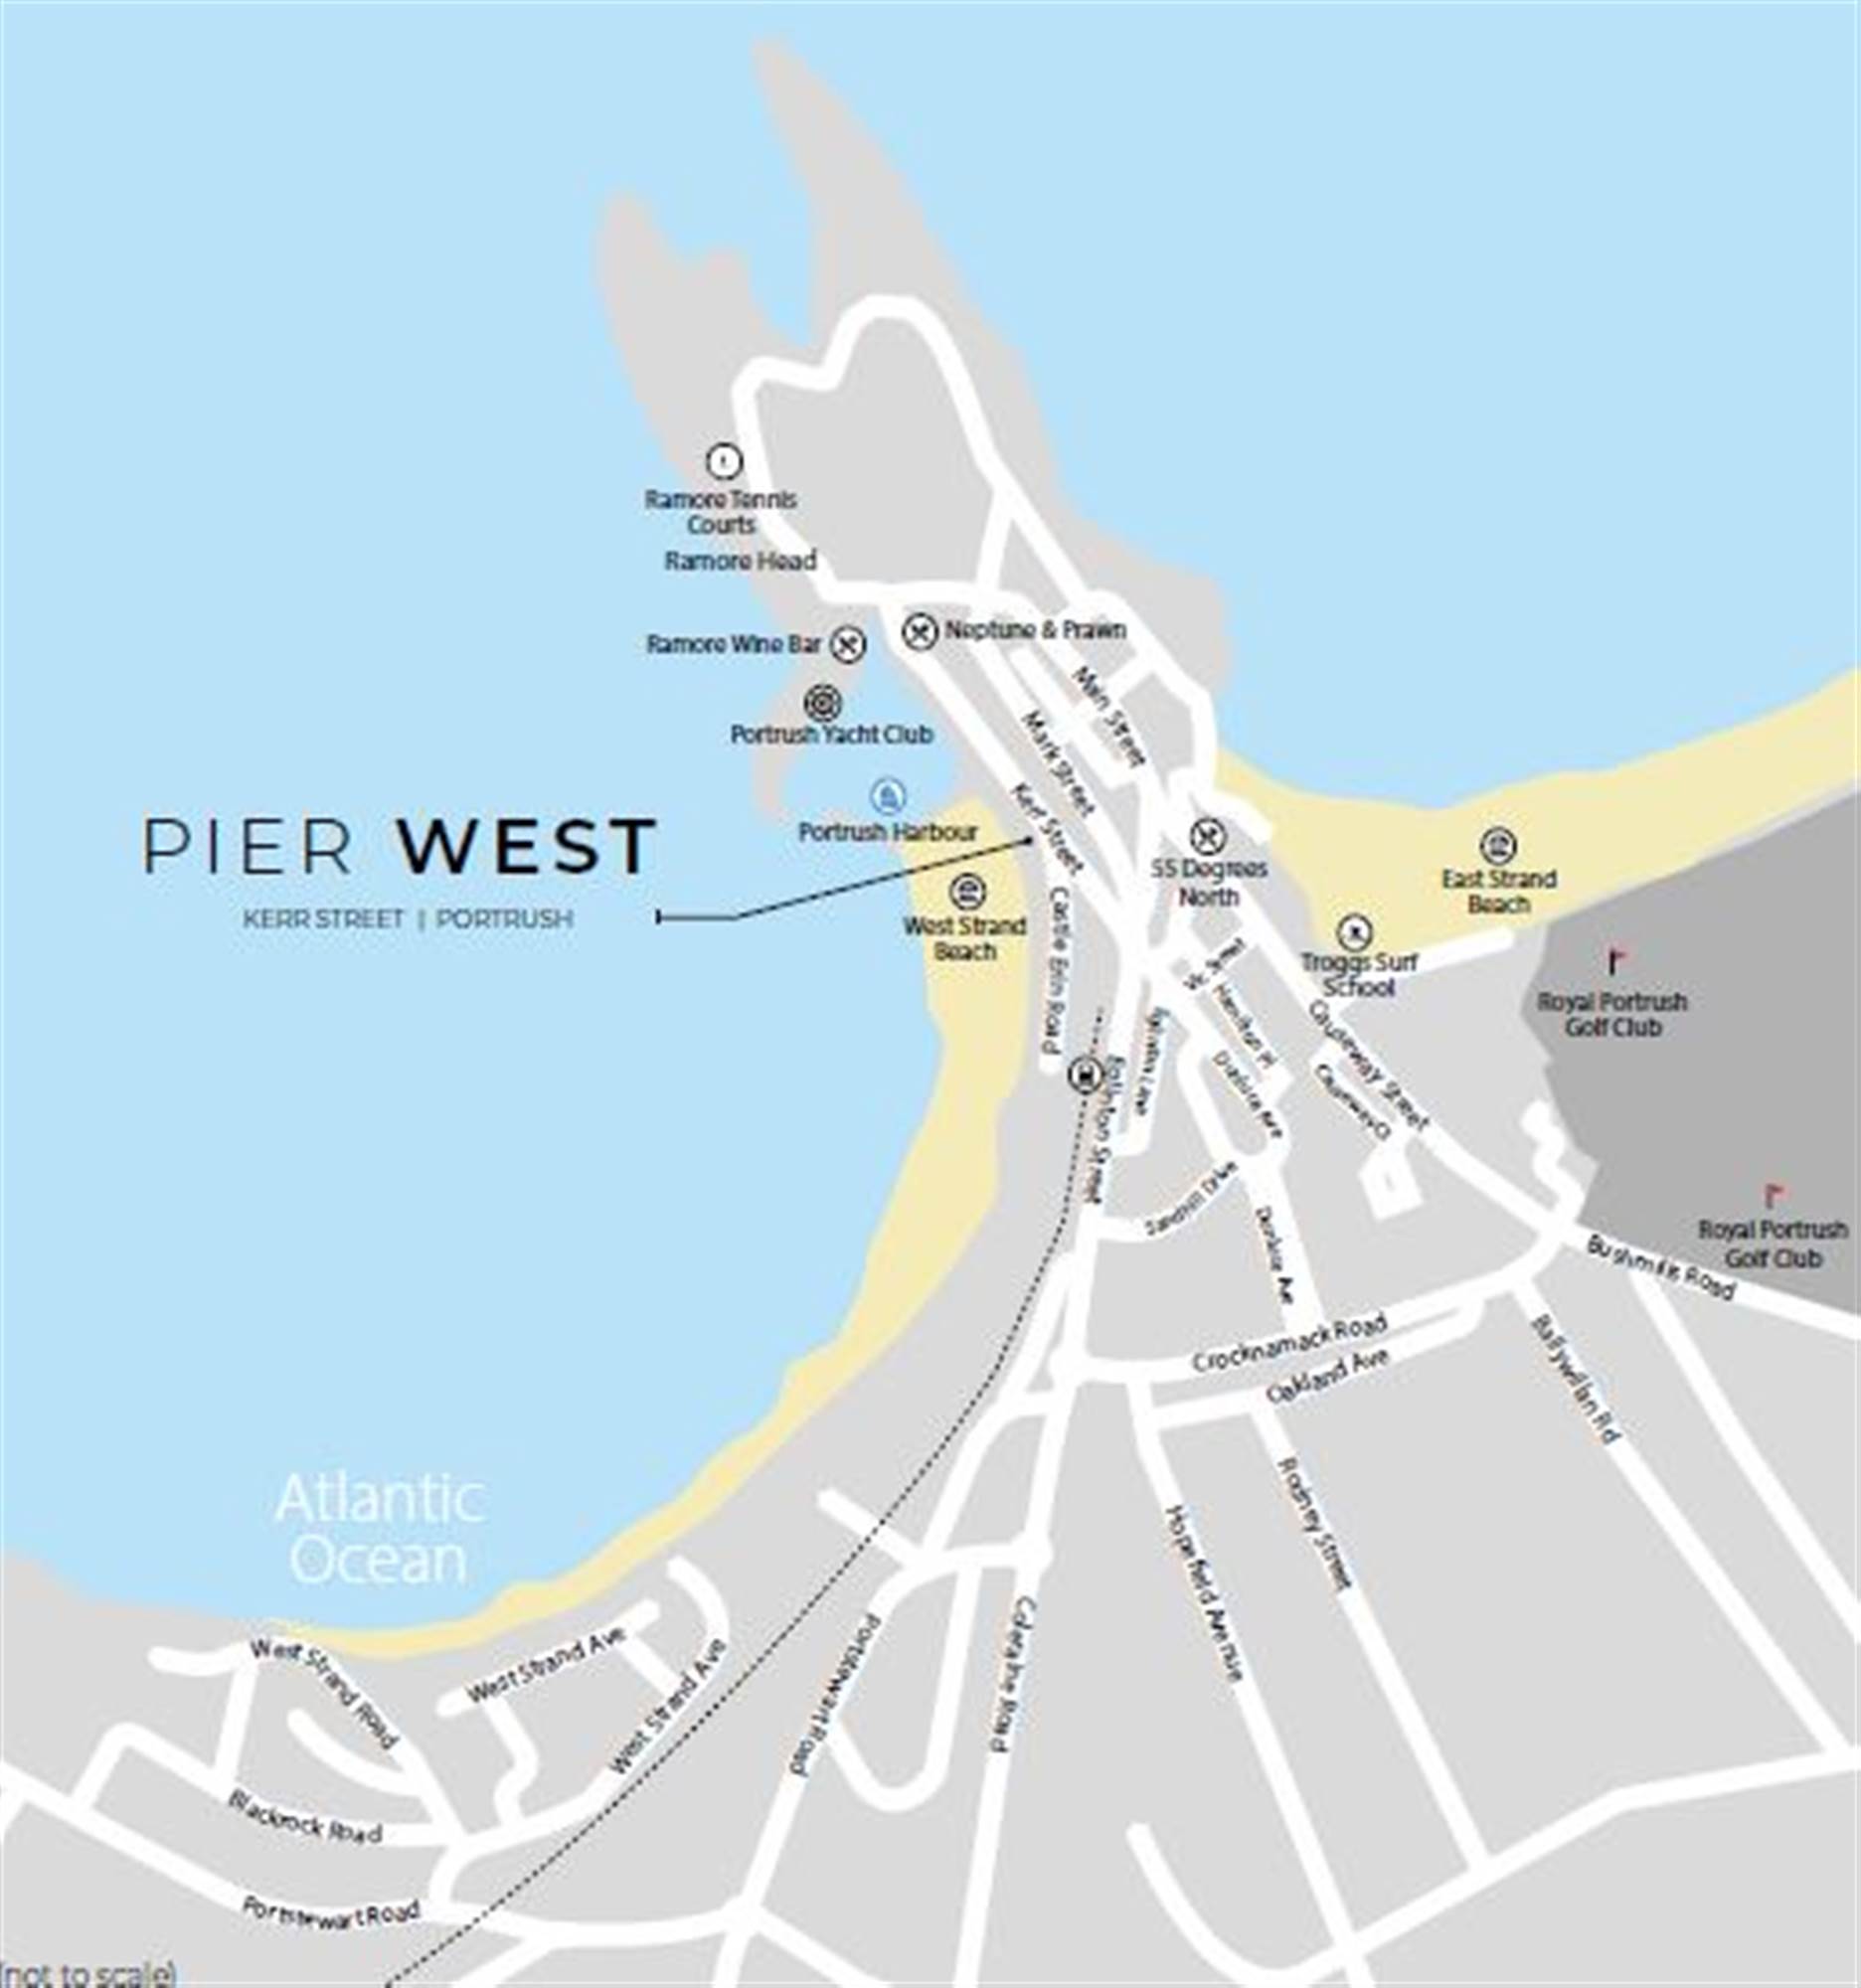 2 Pier West